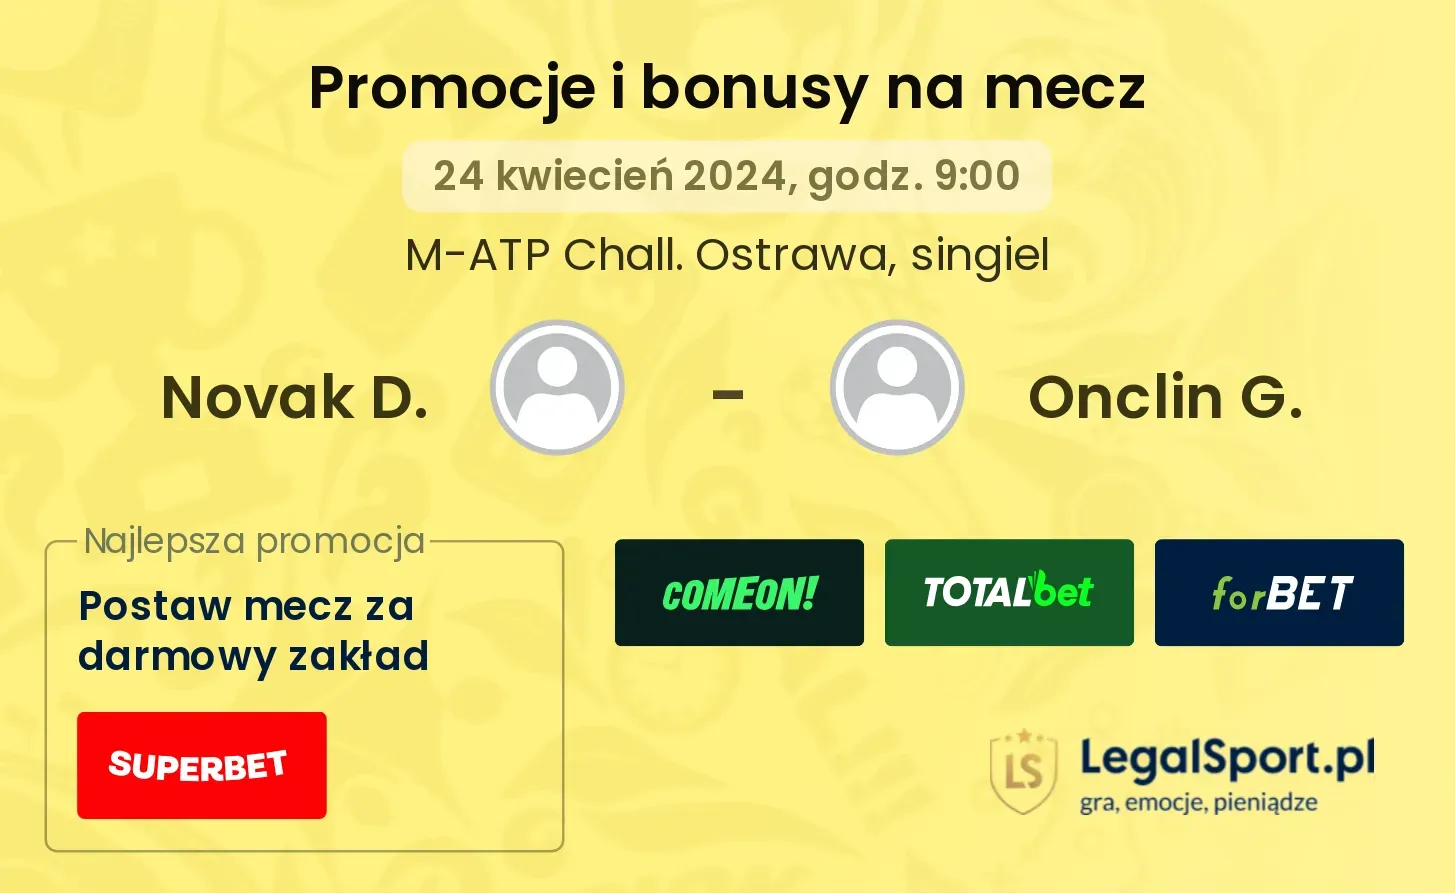 Novak D. - Onclin G. promocje bonusy na mecz